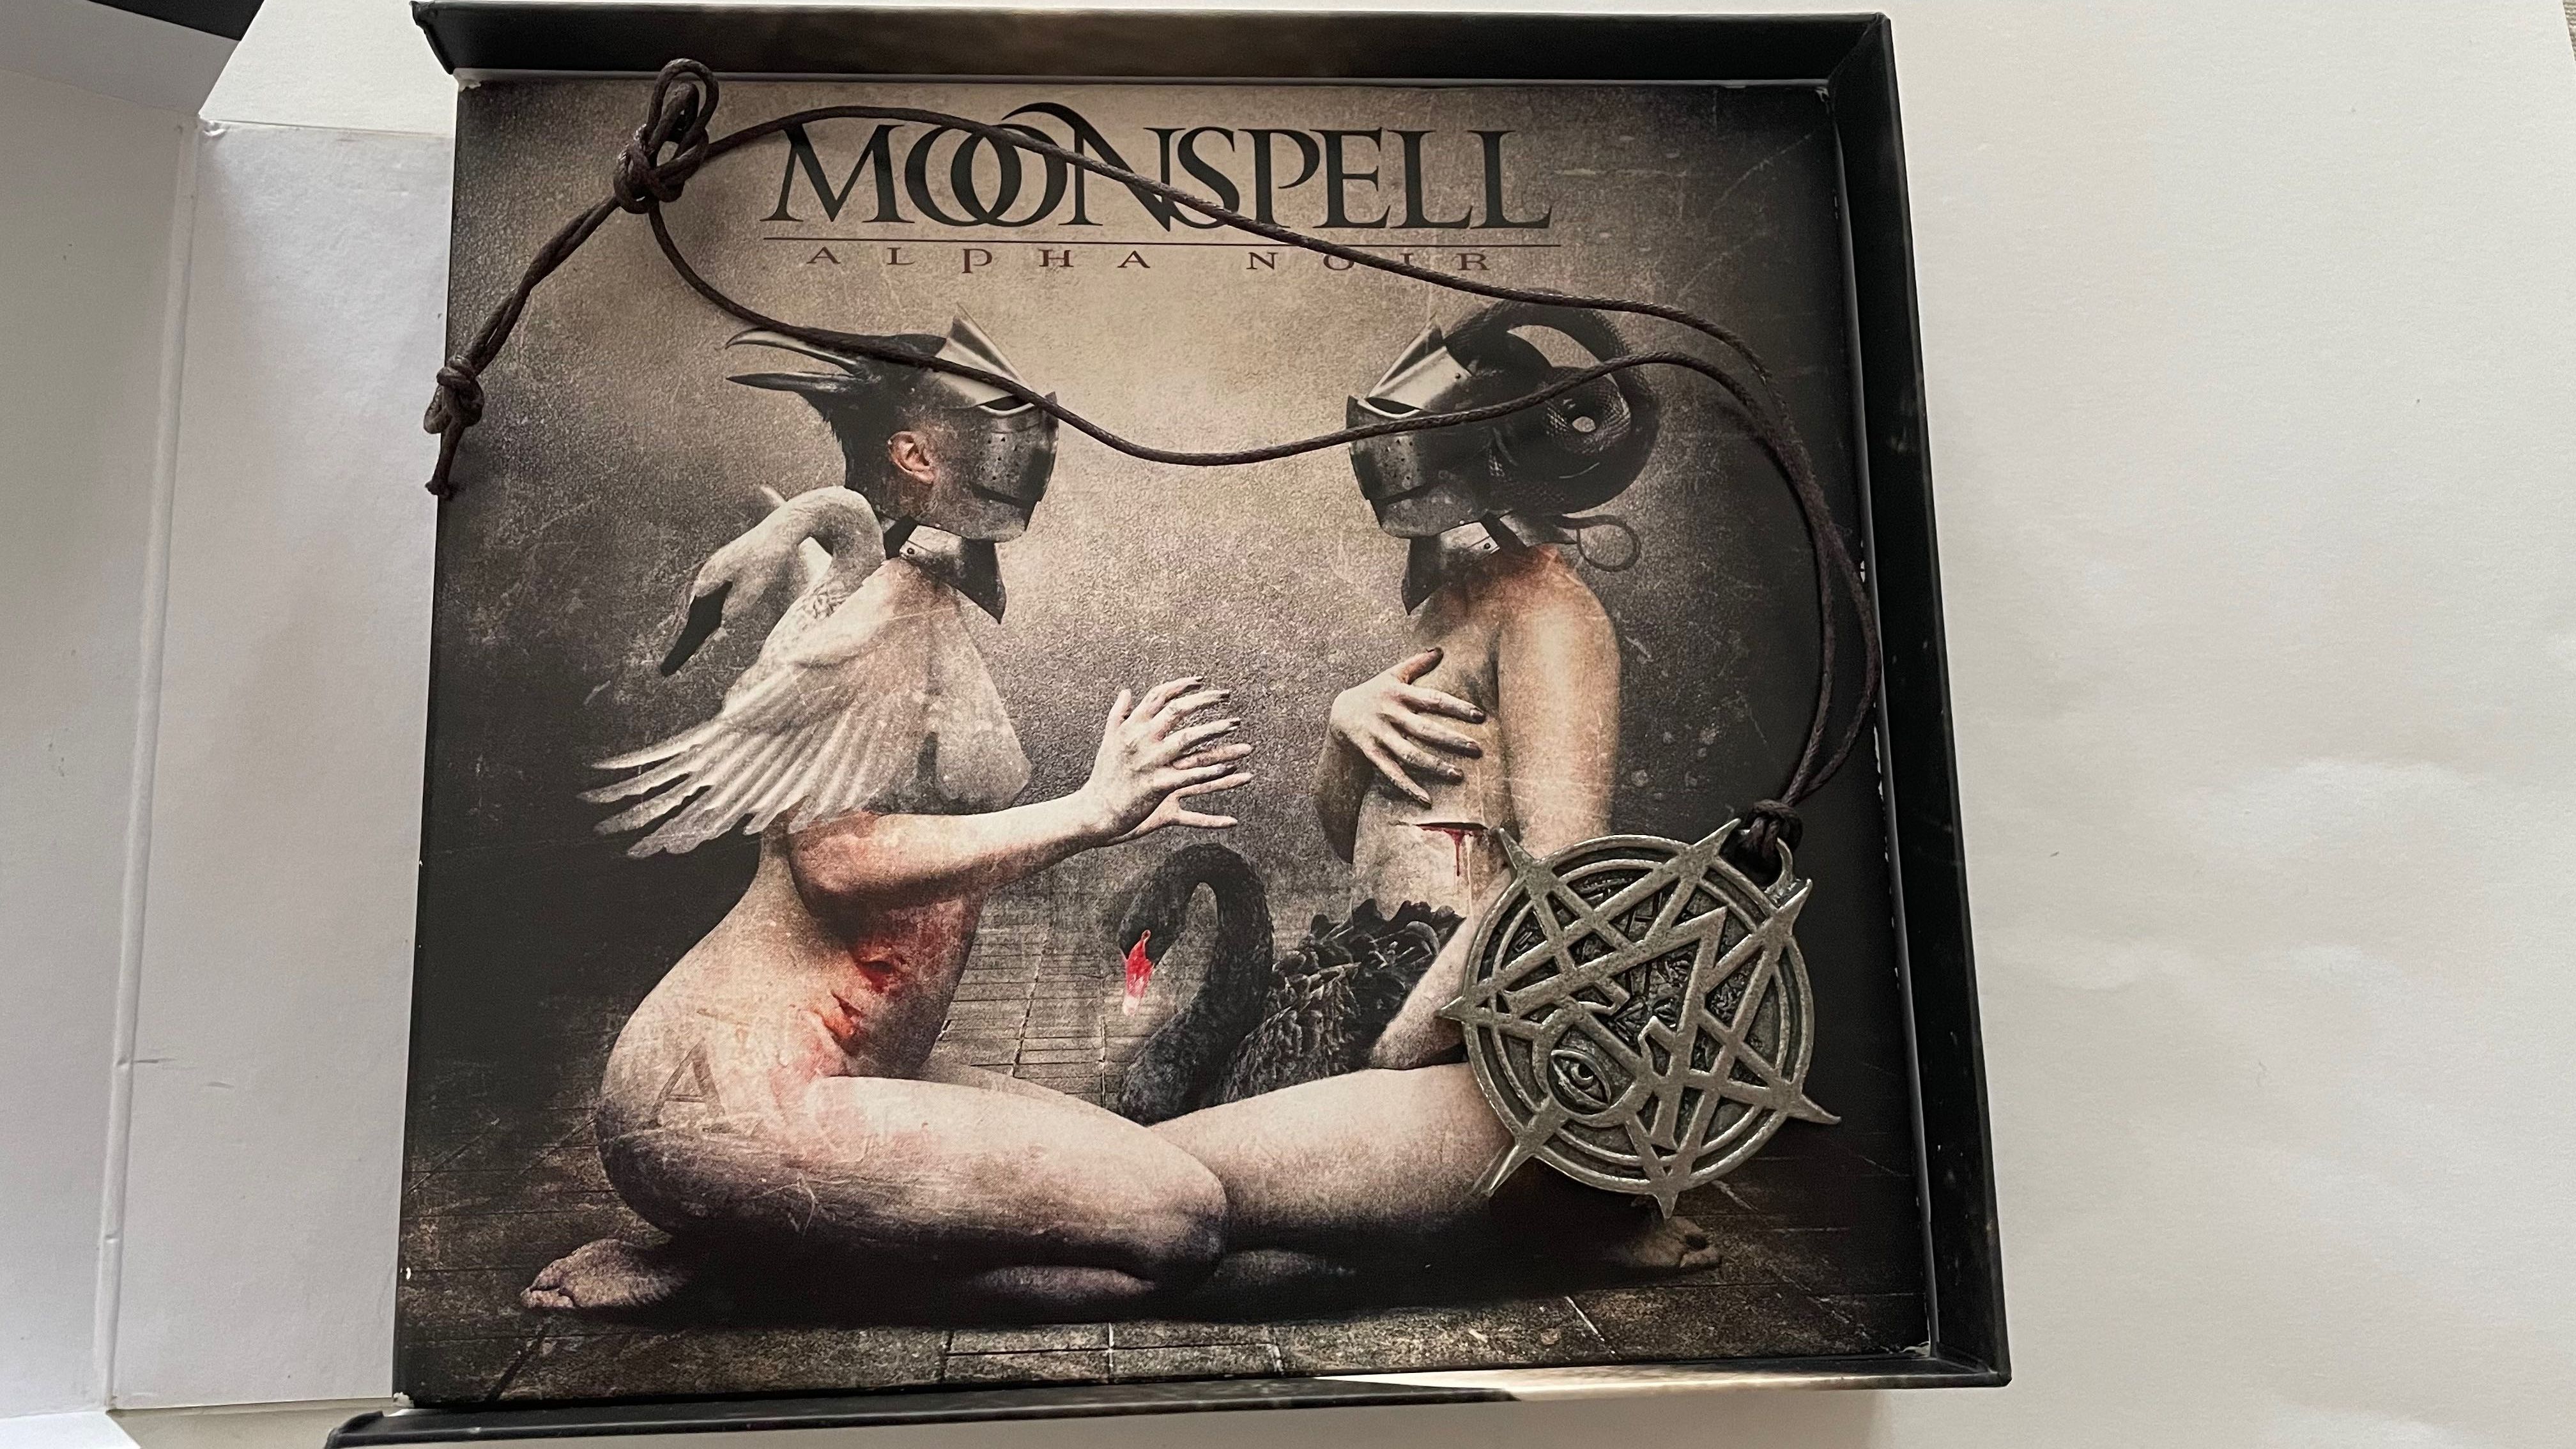 Boxset - Moonspell ‎– Alpha Noir / Omega White - 2 cds